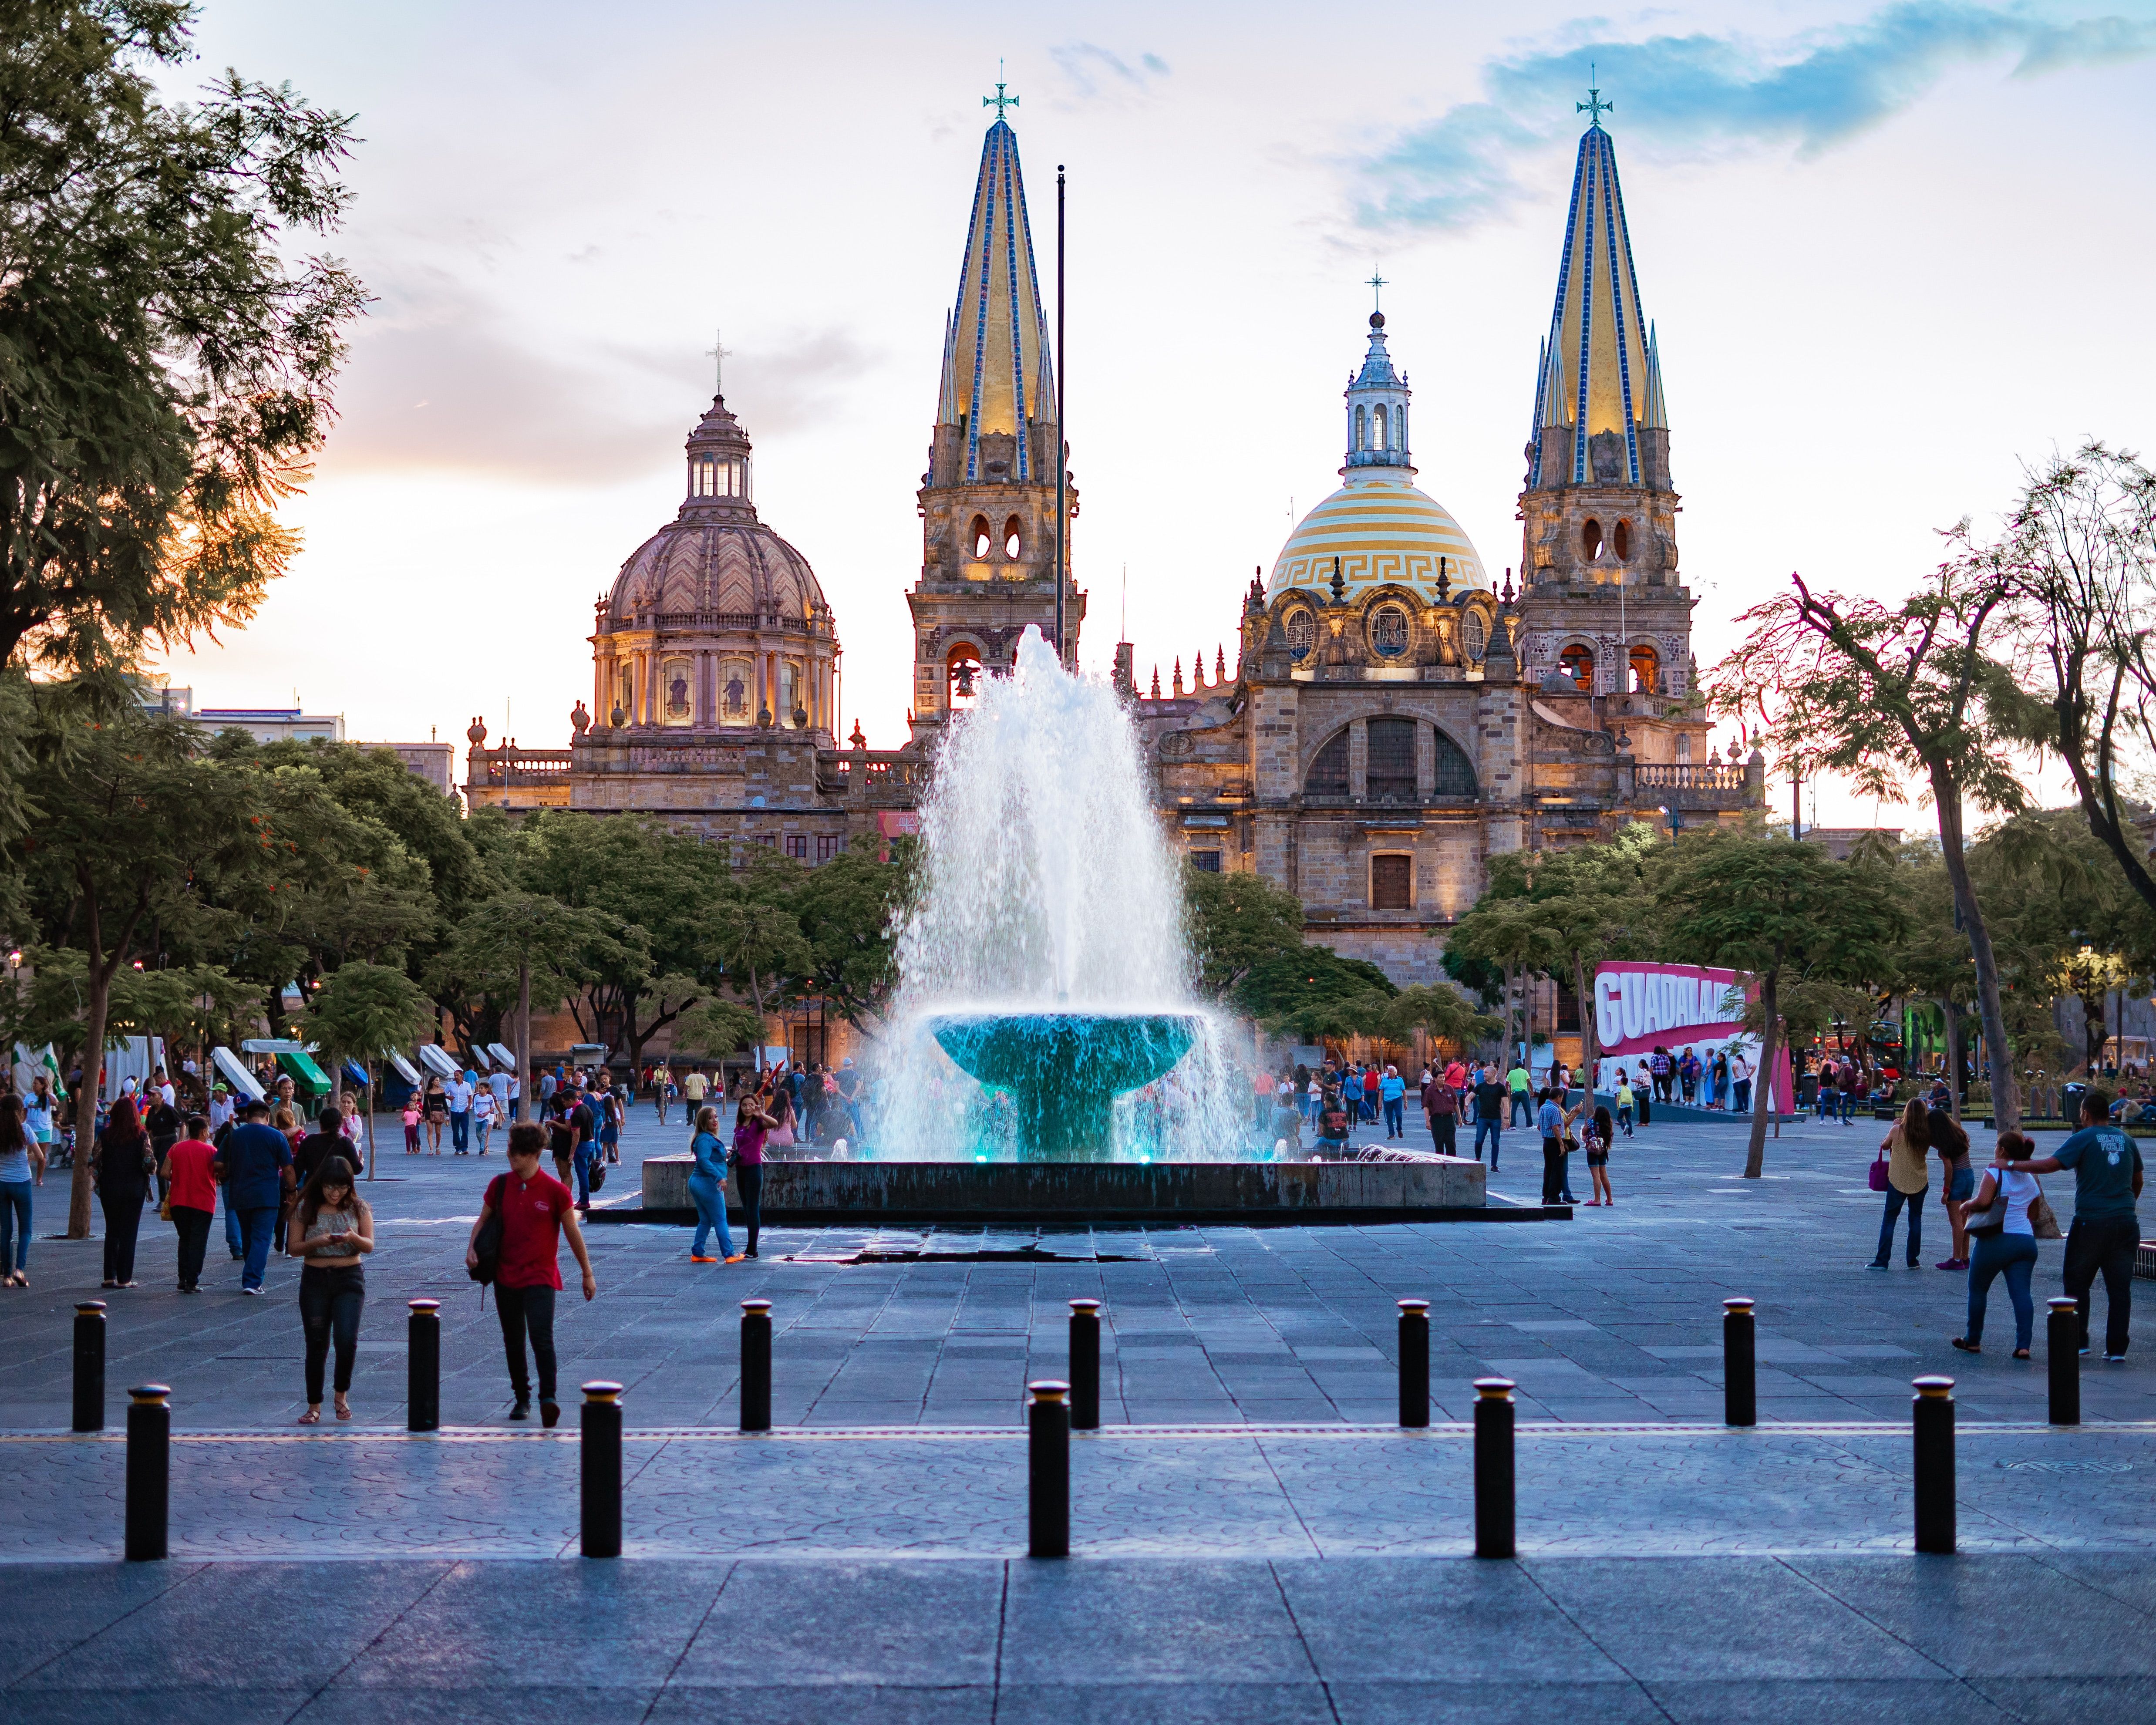 People near water fountain in Plaza de la liberacion, Guadalajara, Mexico